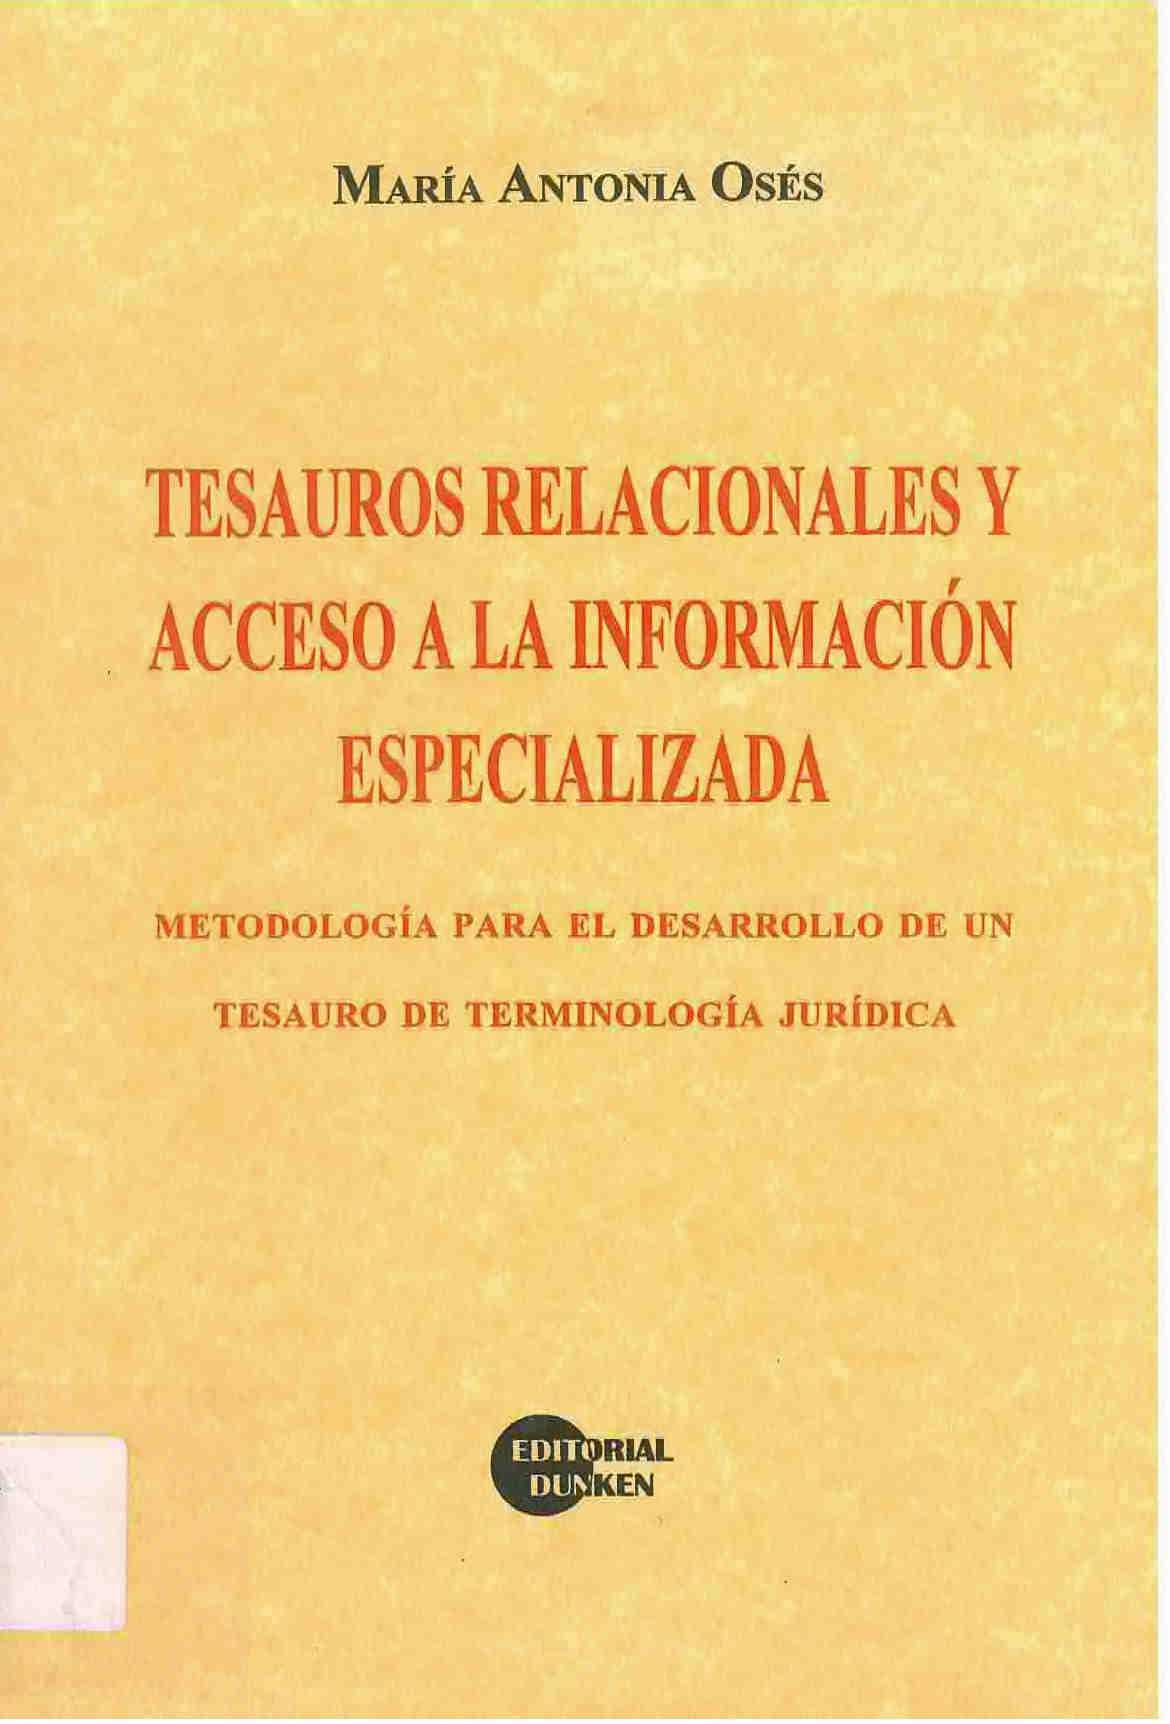 Tesauros relacionales y acceso a la información especializada : metodología para el desarrollo de un tesauro de terminología jurídica